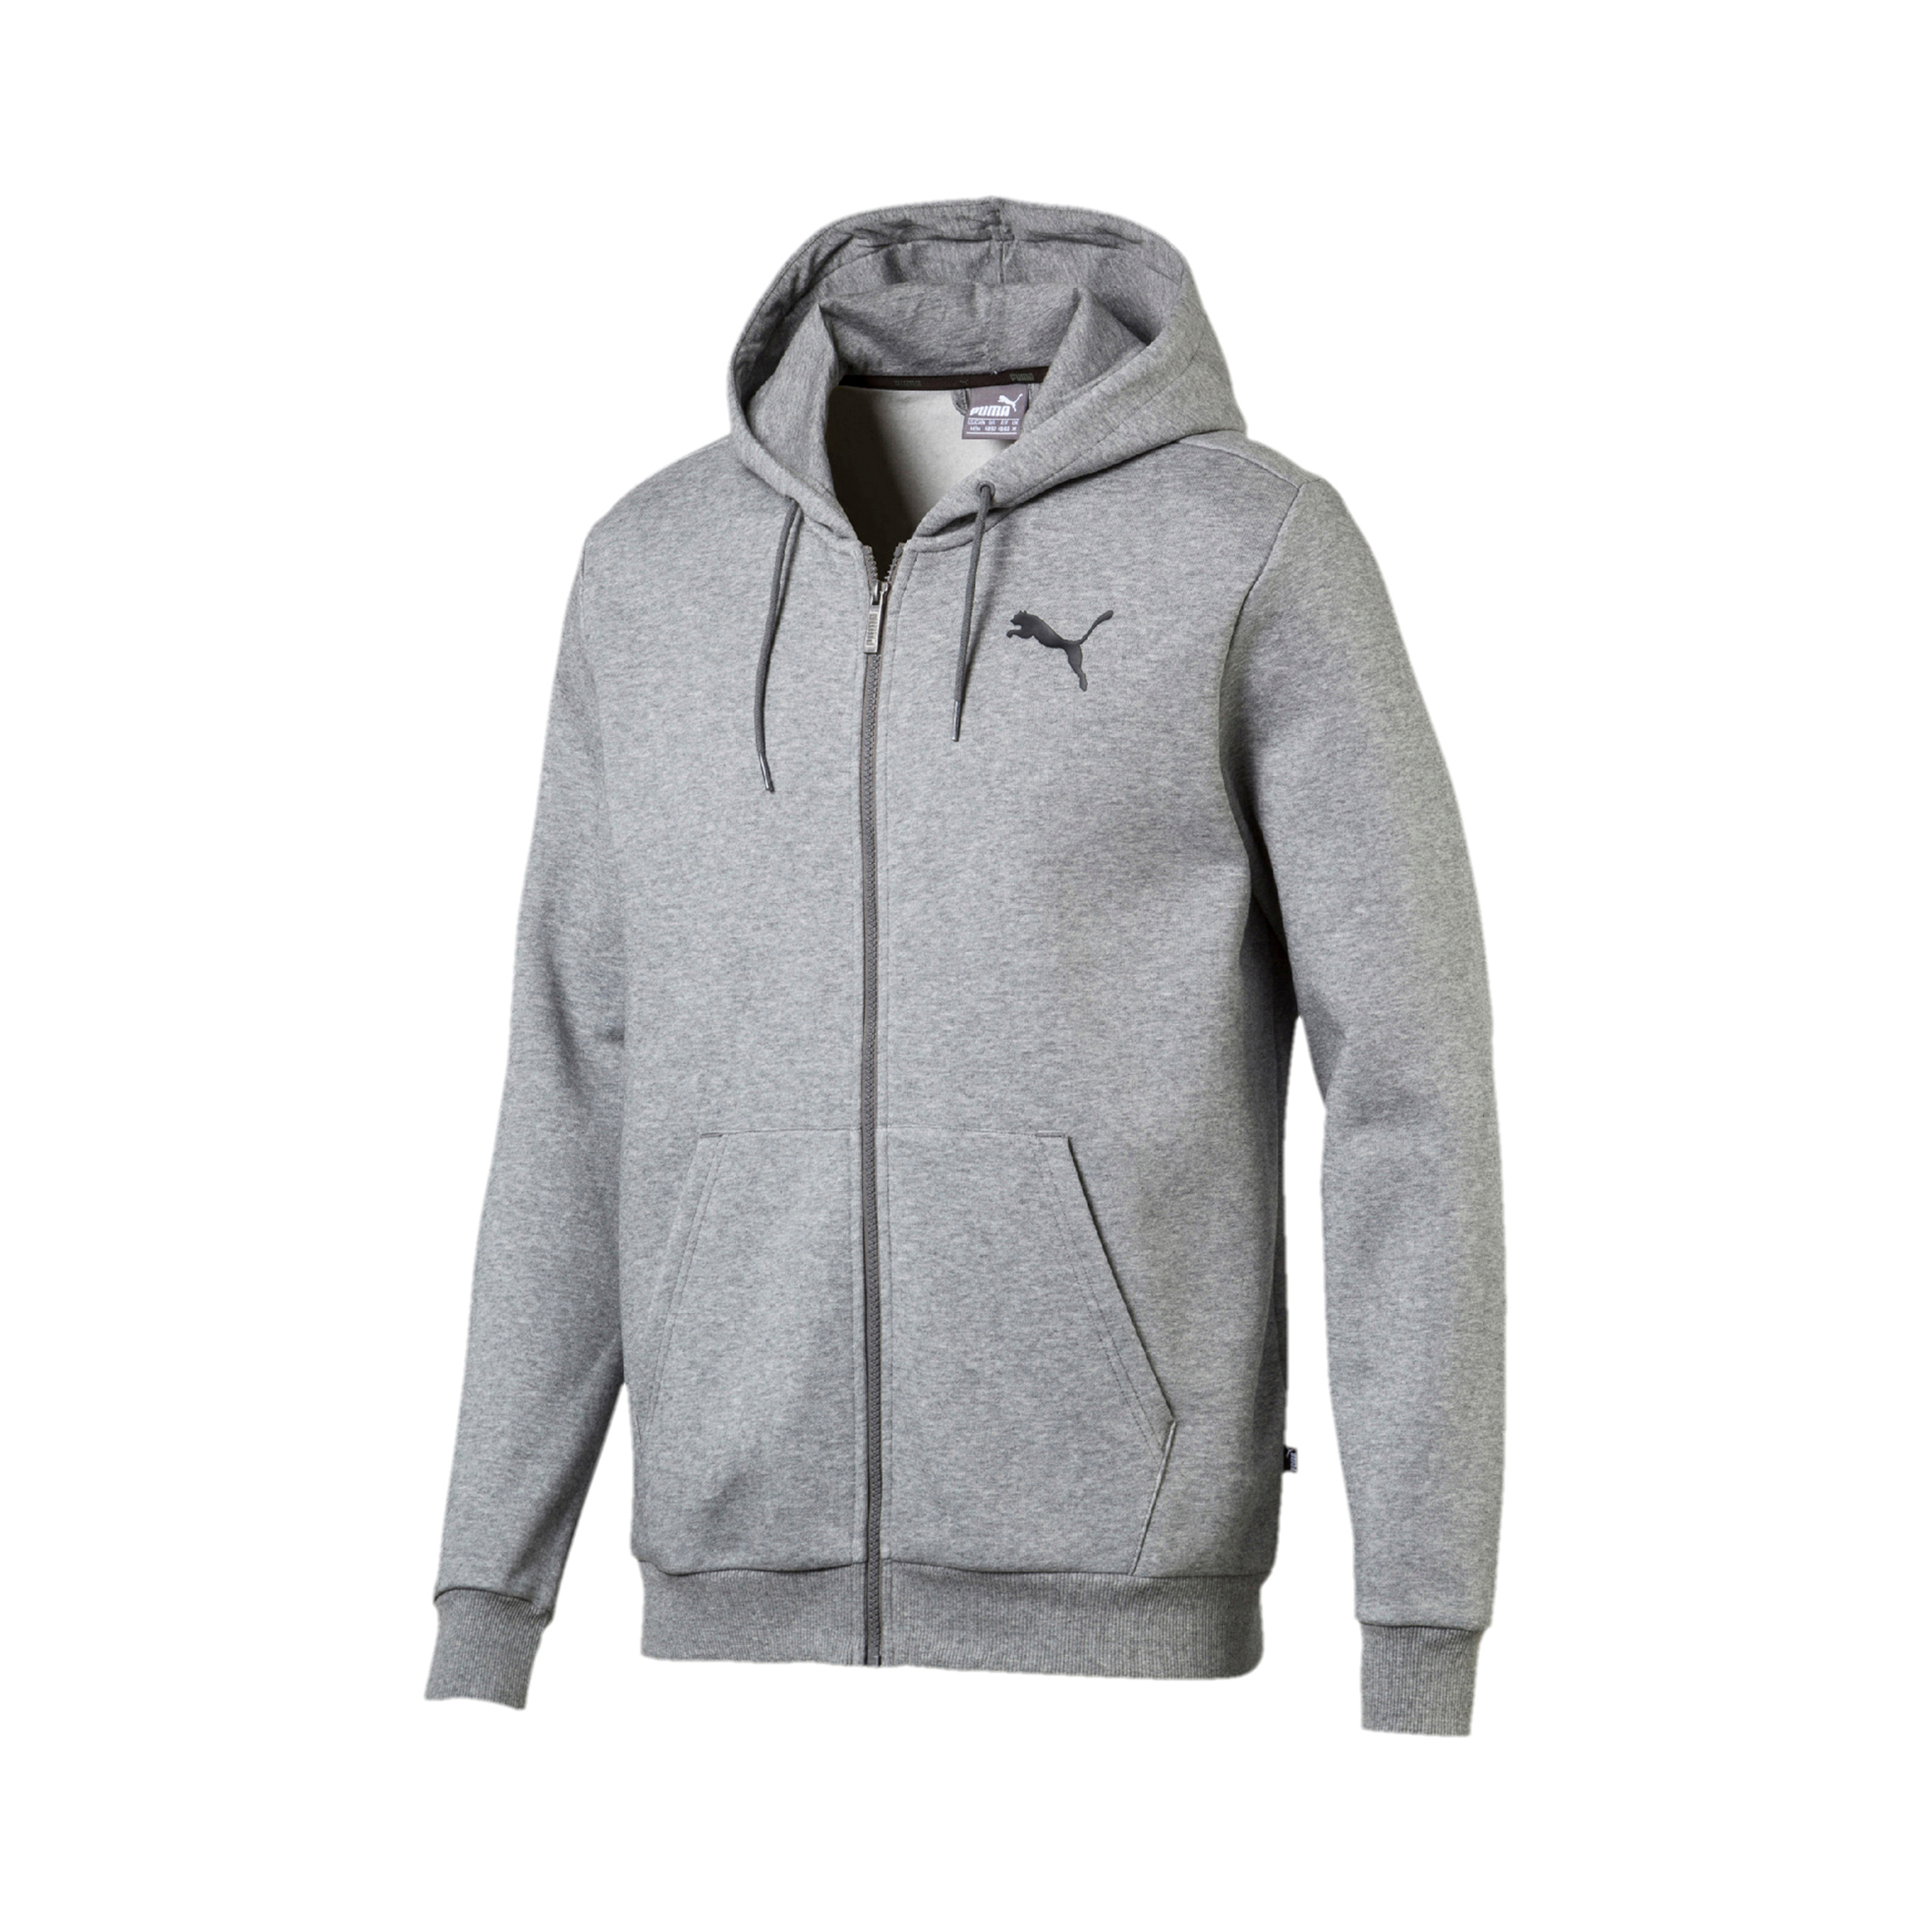 puma men's half-zip polyester hoodies